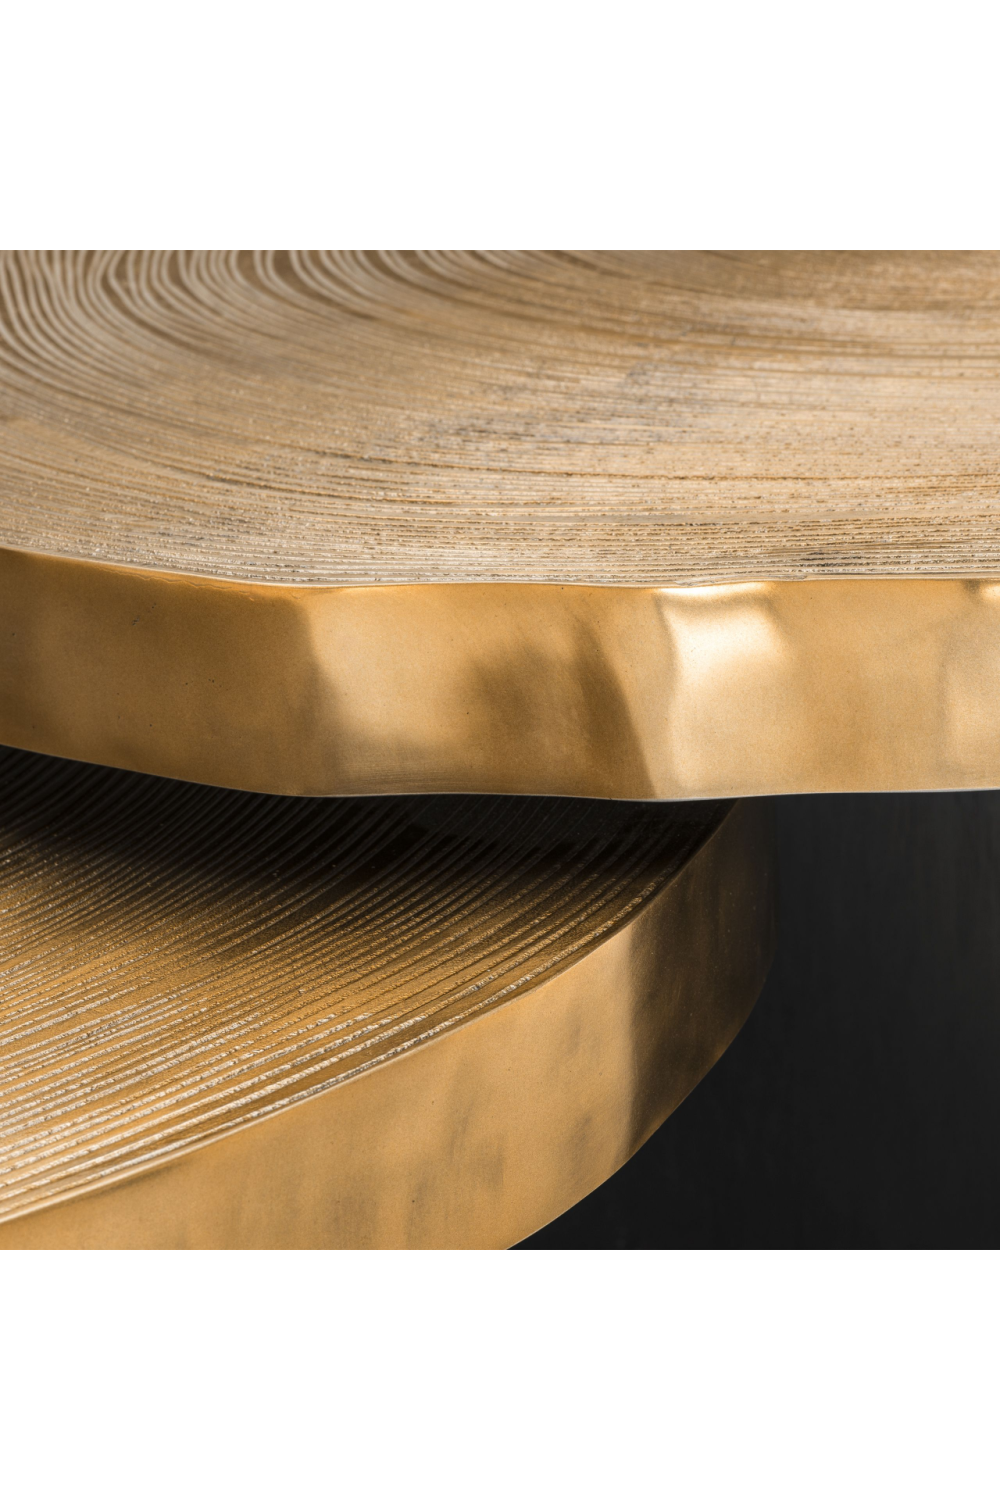 Wood Slice Nesting Coffee Table | Eichholtz Thousand Oaks | OROA